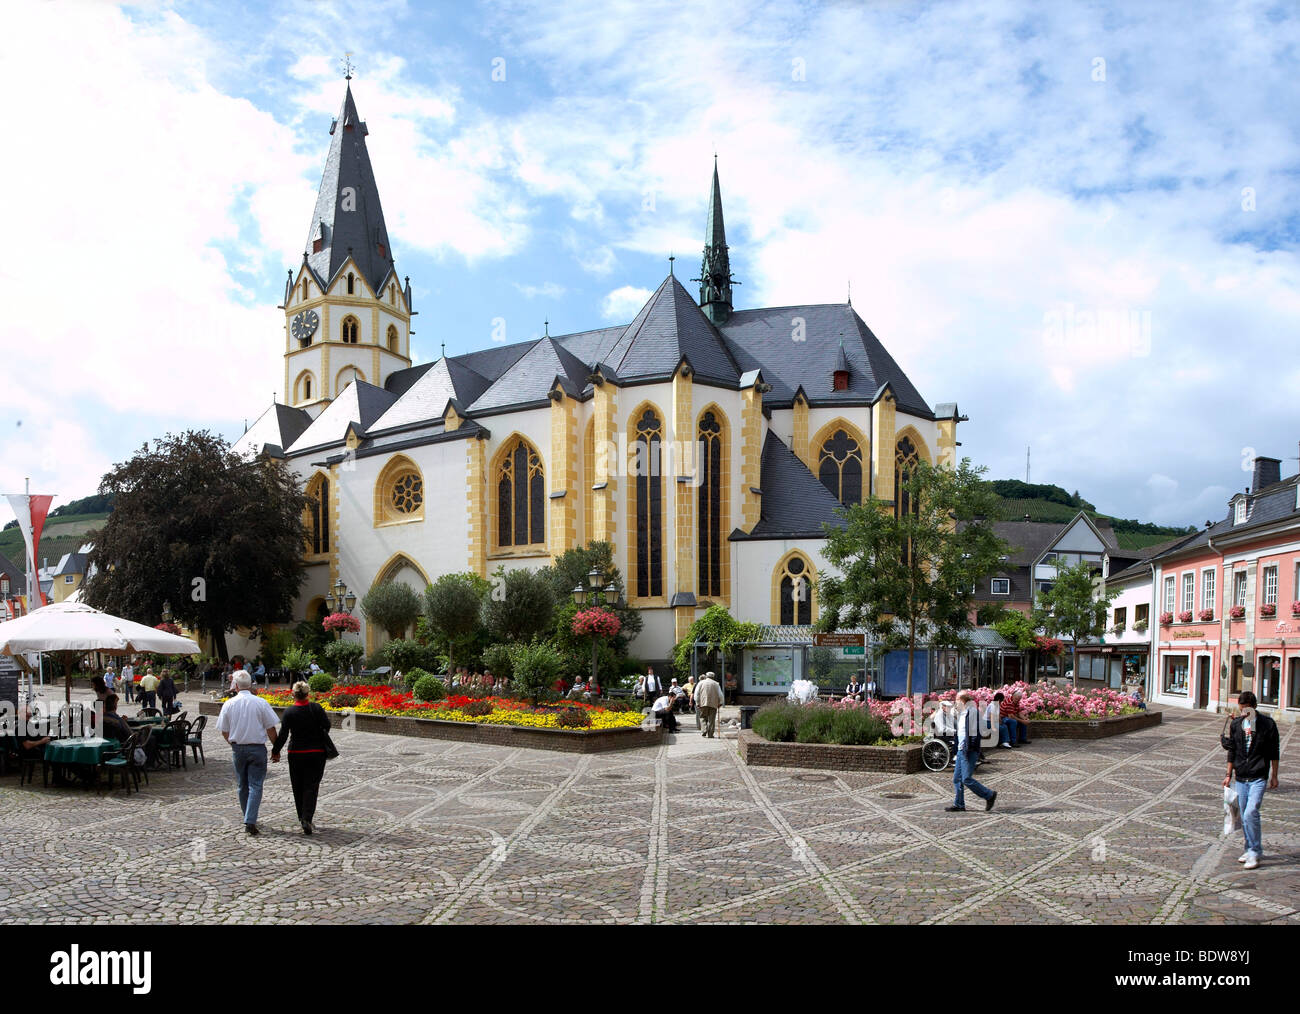 La iglesia parroquial de San Lorenzo en el mercado de Ahrweiler, Renania-Palatinado, Alemania, Europa Foto de stock